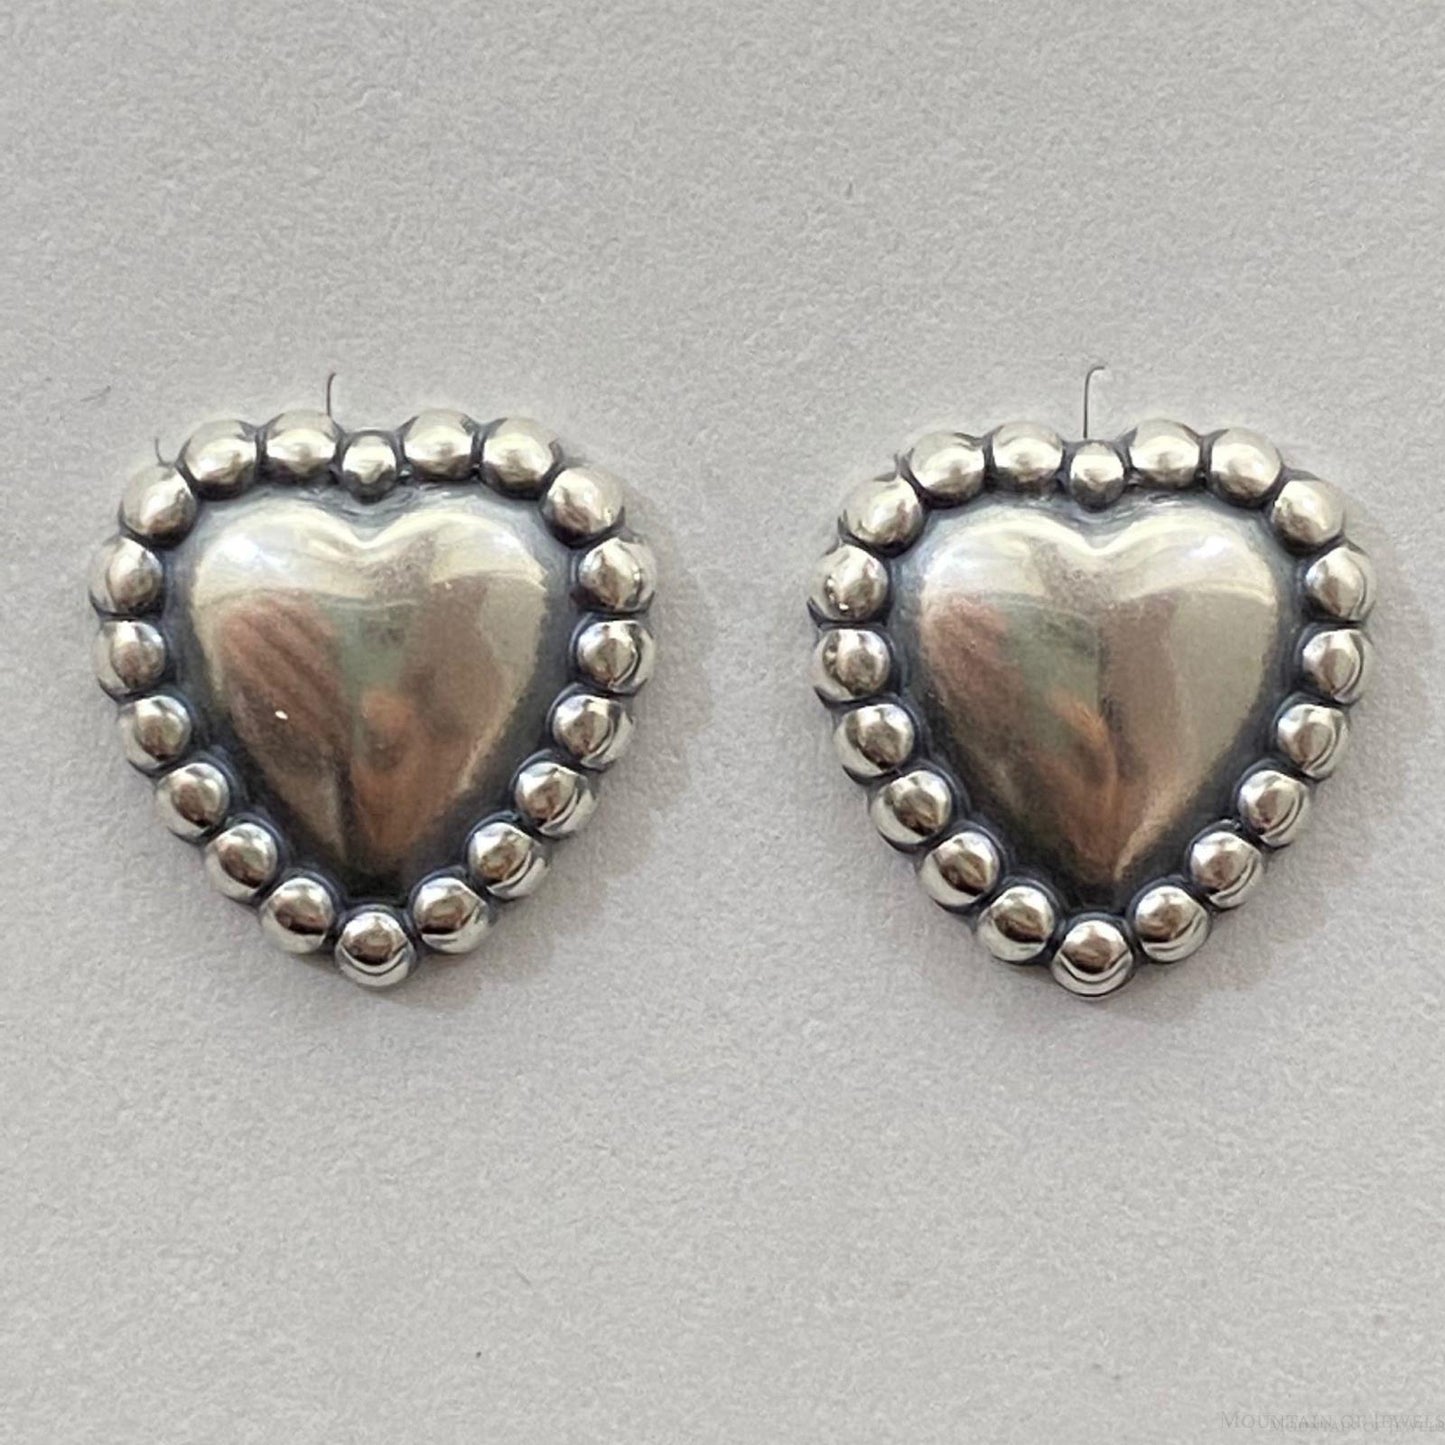 Sterling Silver Heart Stud Earrings For Women (1 Pair)